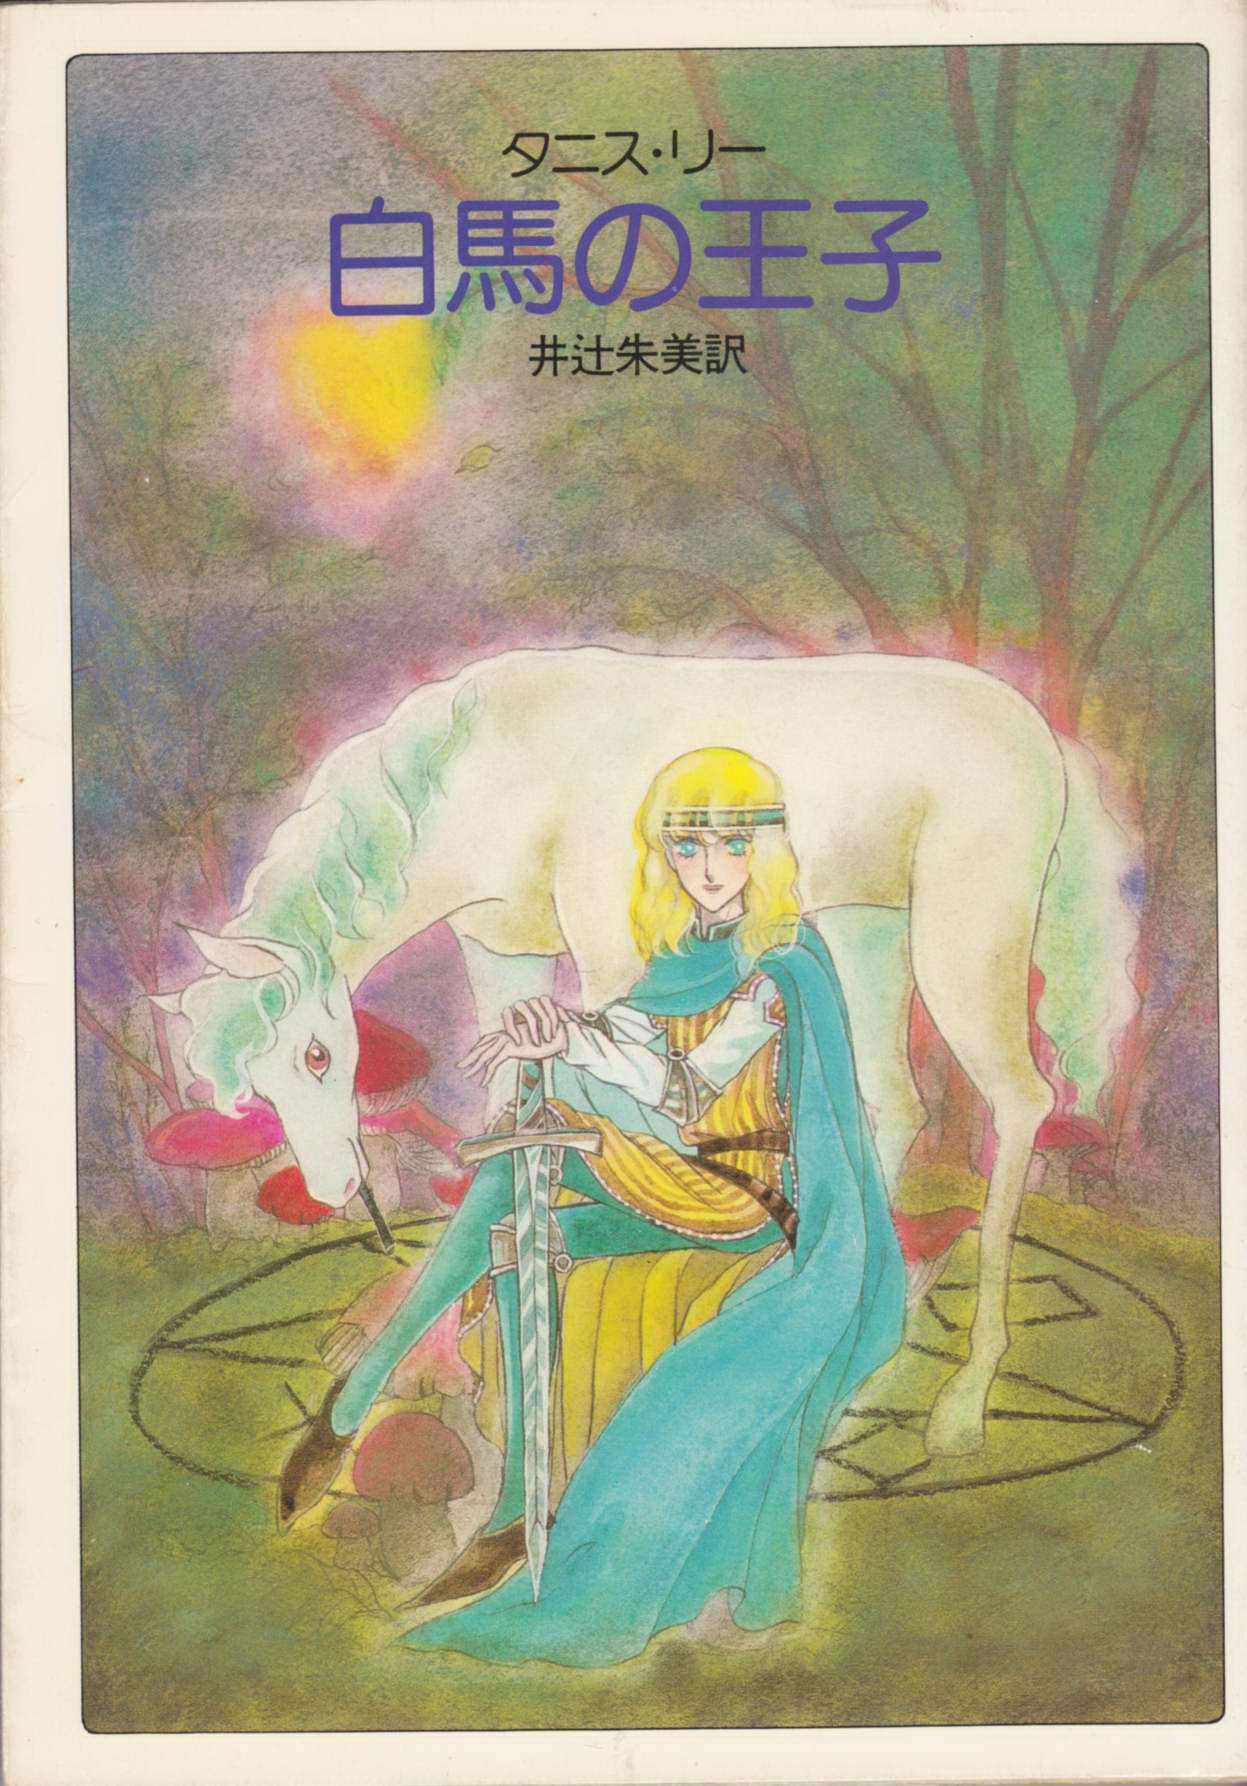 Hakuba No Ouji (Prince On A White Horse)